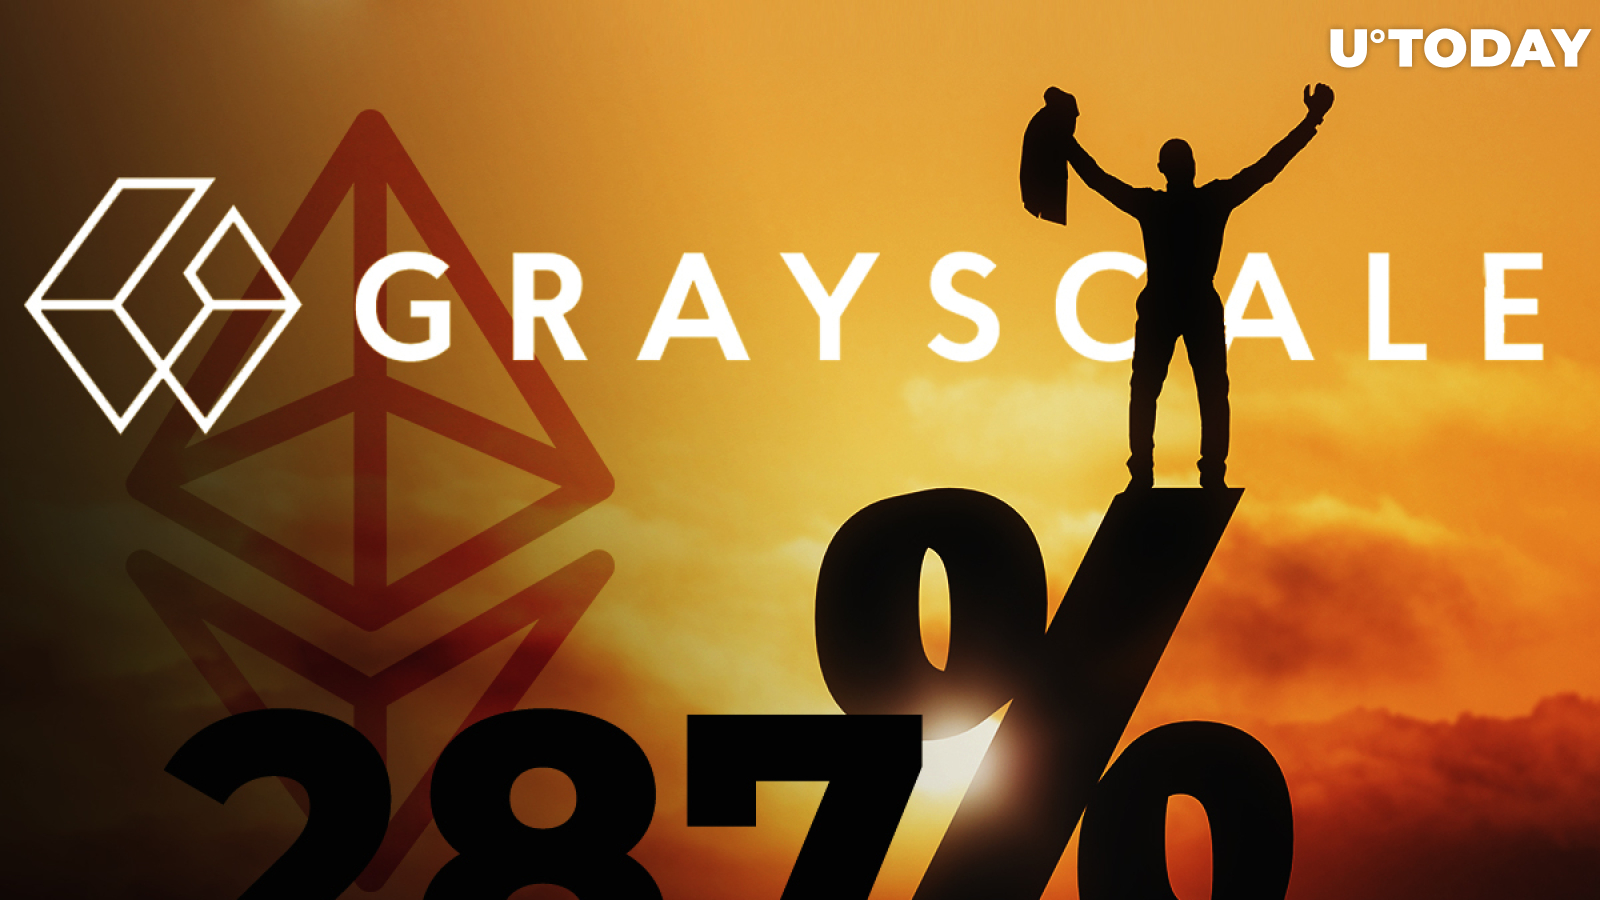 Grayscale's Investors Buy Ethereum-ETH at Insane 287 Percent Premium